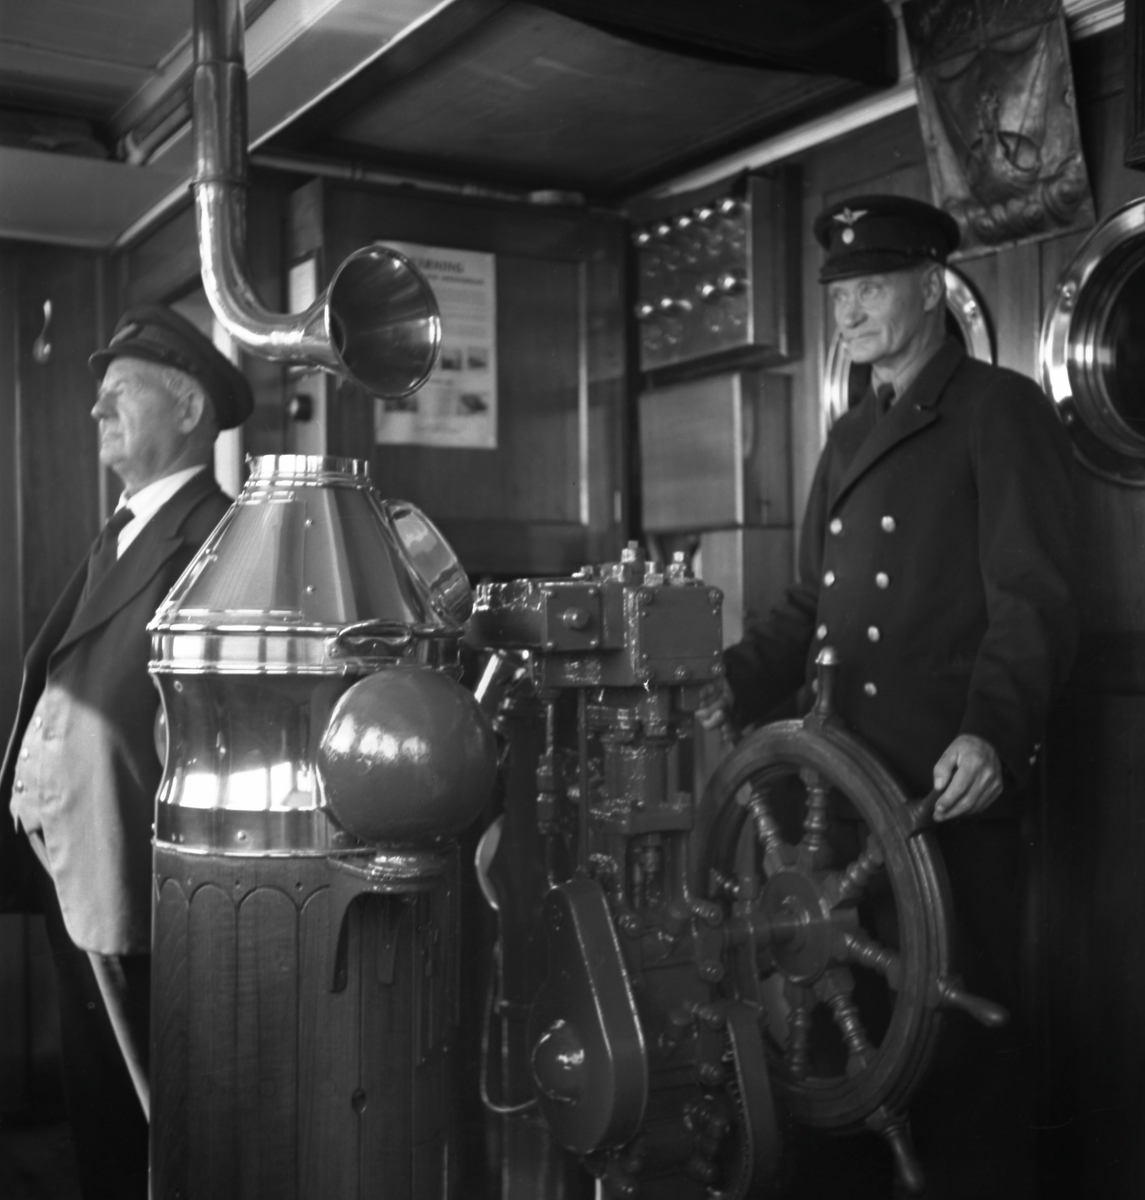 Styrman Karl Nilsson och rorgängare Anton Nilsson i styrhytten på  tågfärjan Drottning Victoria. Trafikerade linjen Trelleborg - Sassnitz.  Inkallades som hjälpkryssare (hjkr 3) under andra världskriget. Fotot möjligtvis taget under kriget.